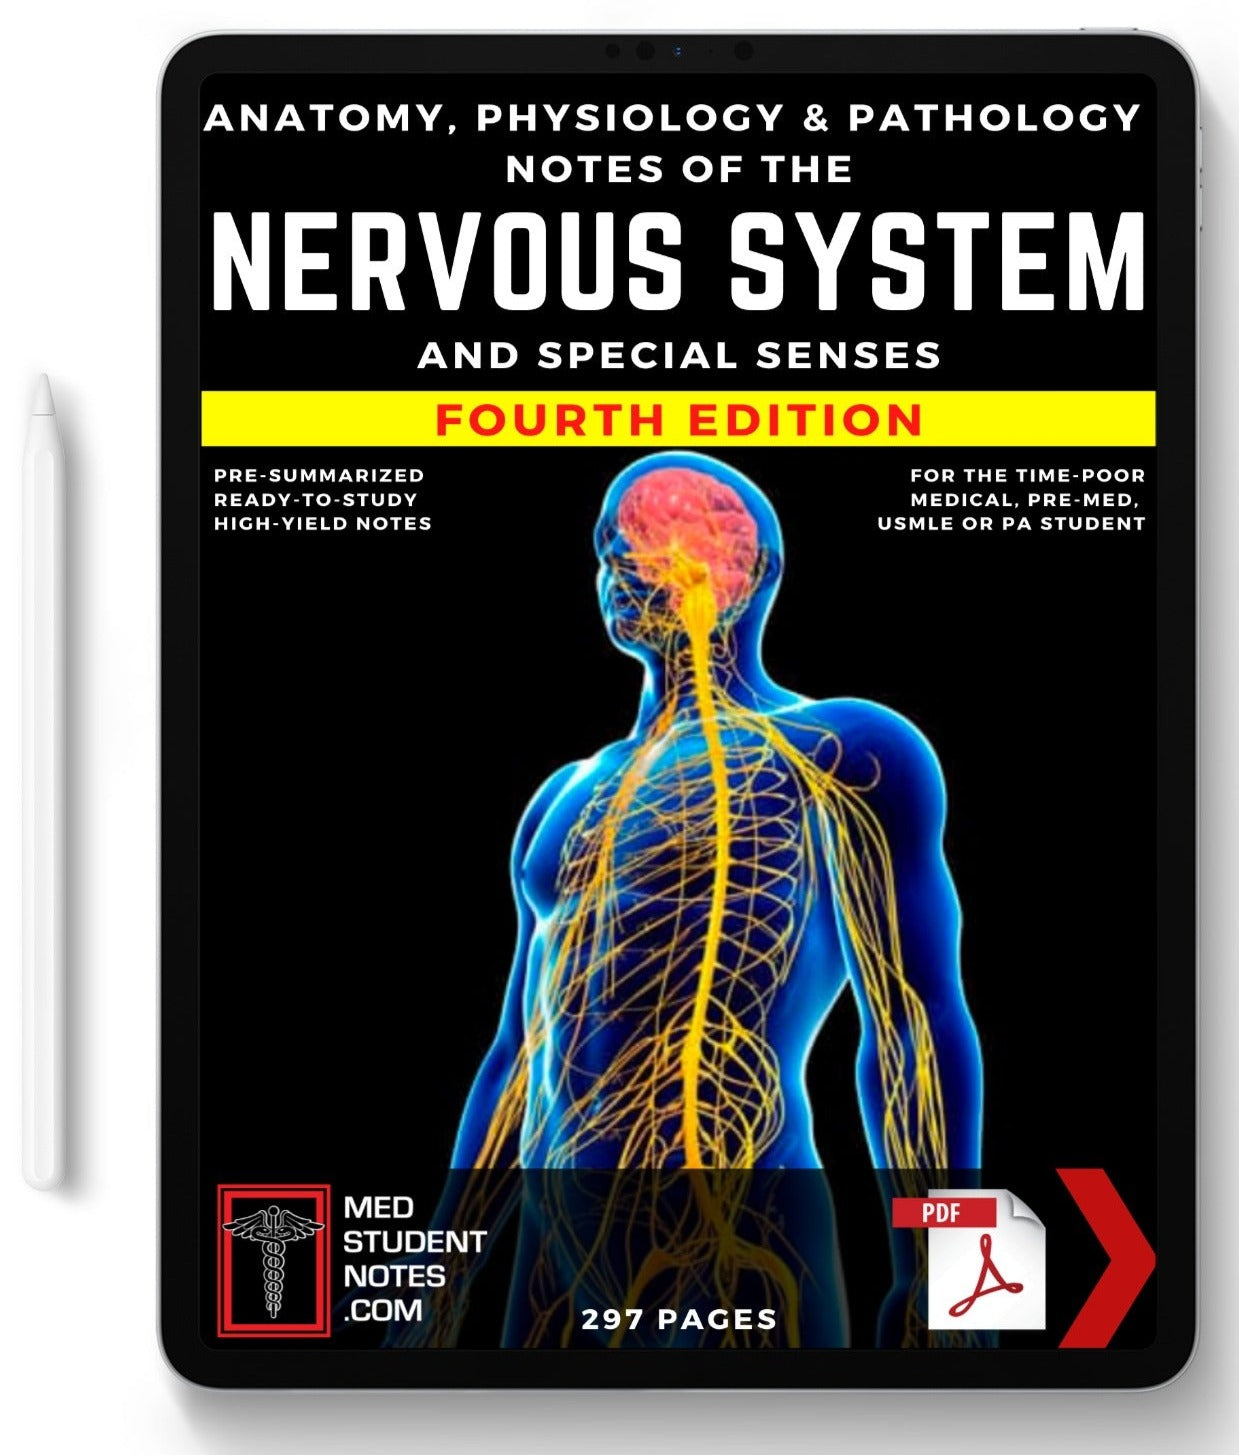 The Nervous System MedStudentNotes